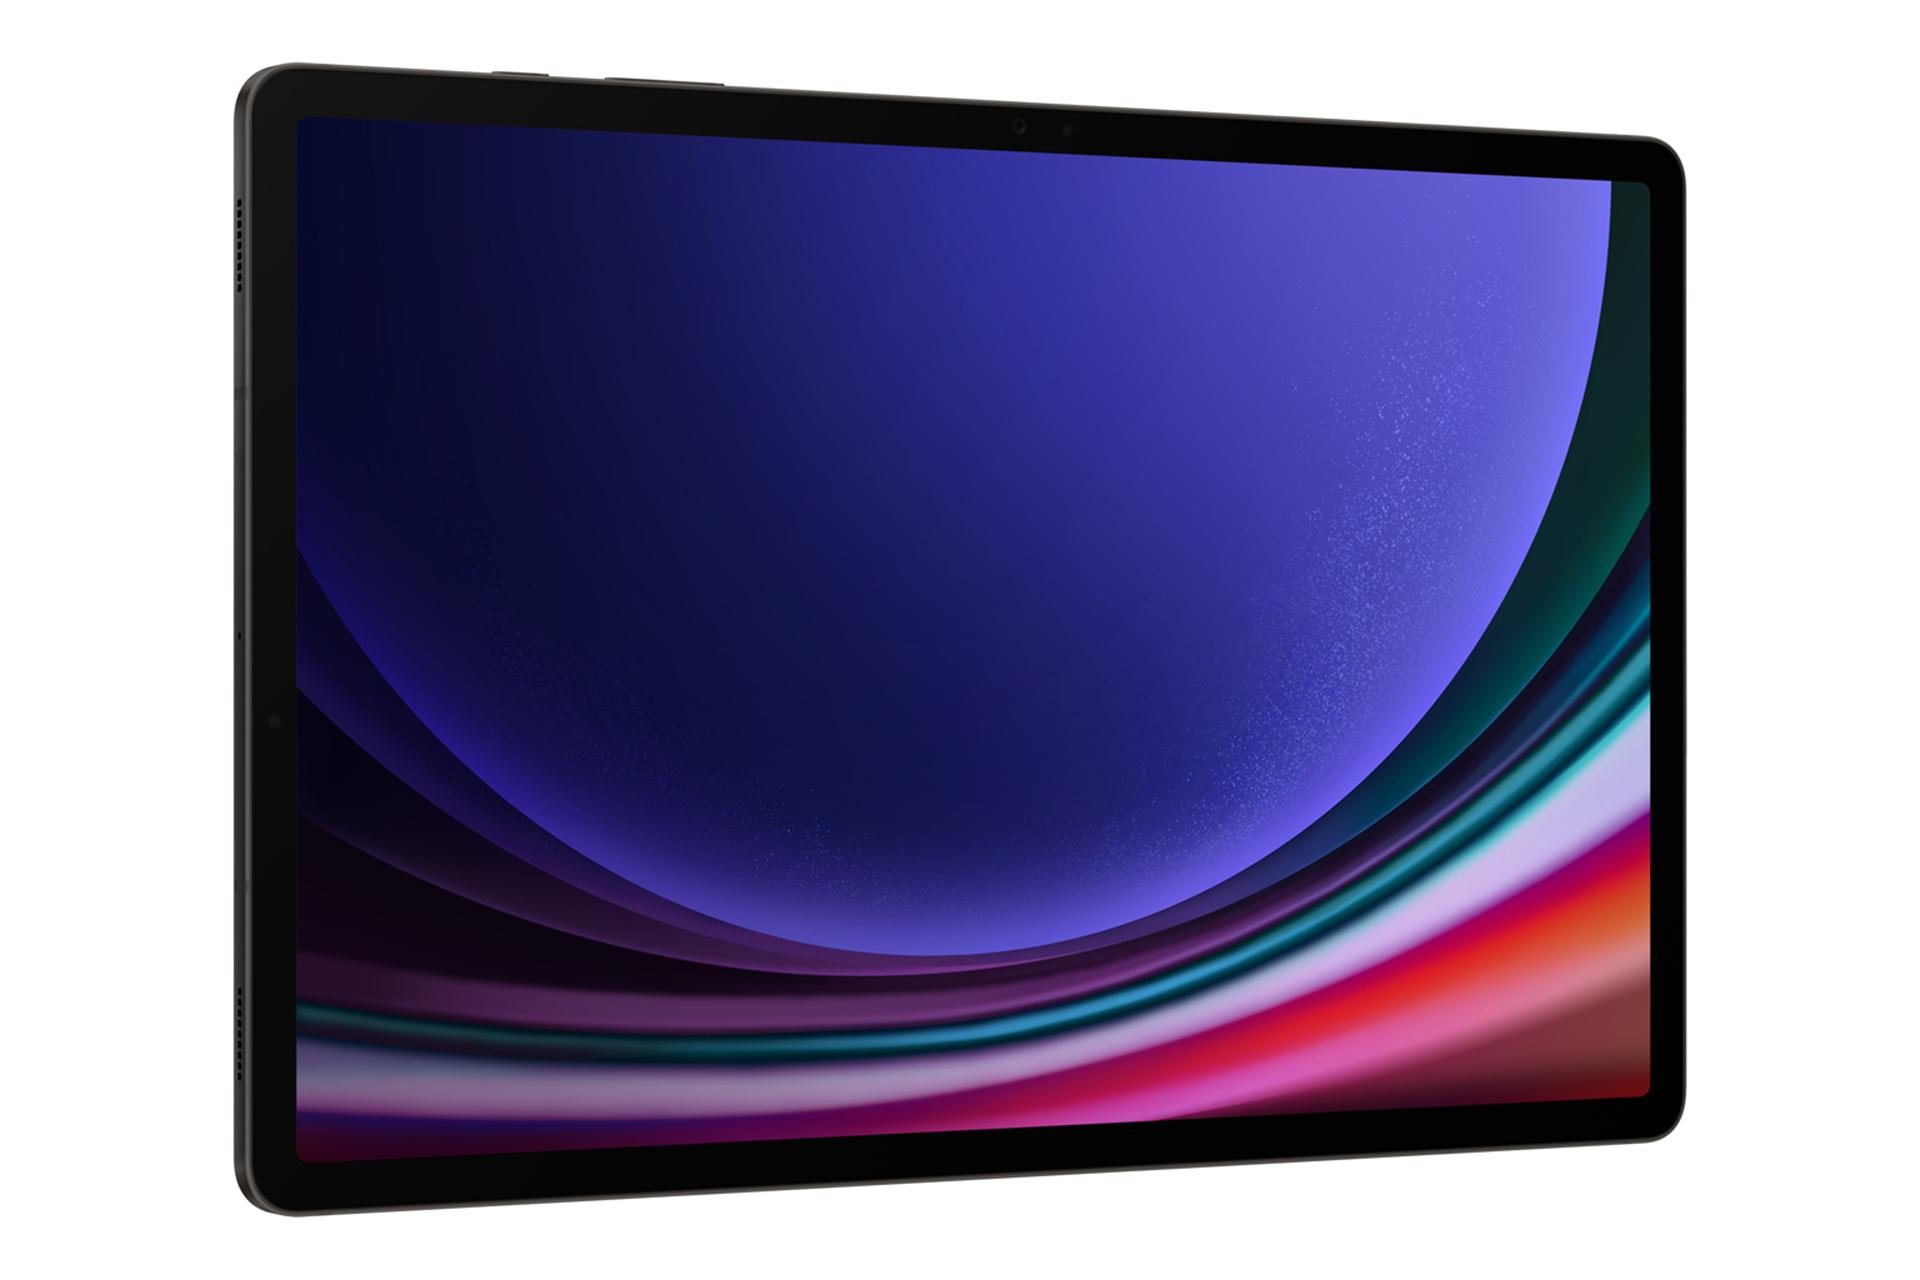 نمای نیمرخ سمت چپ تبلت گلکسی تب اس 9 پلاس سامسونگ / Samsung Galaxy Tab S9 Plus با نمایش لبه سمت چپ